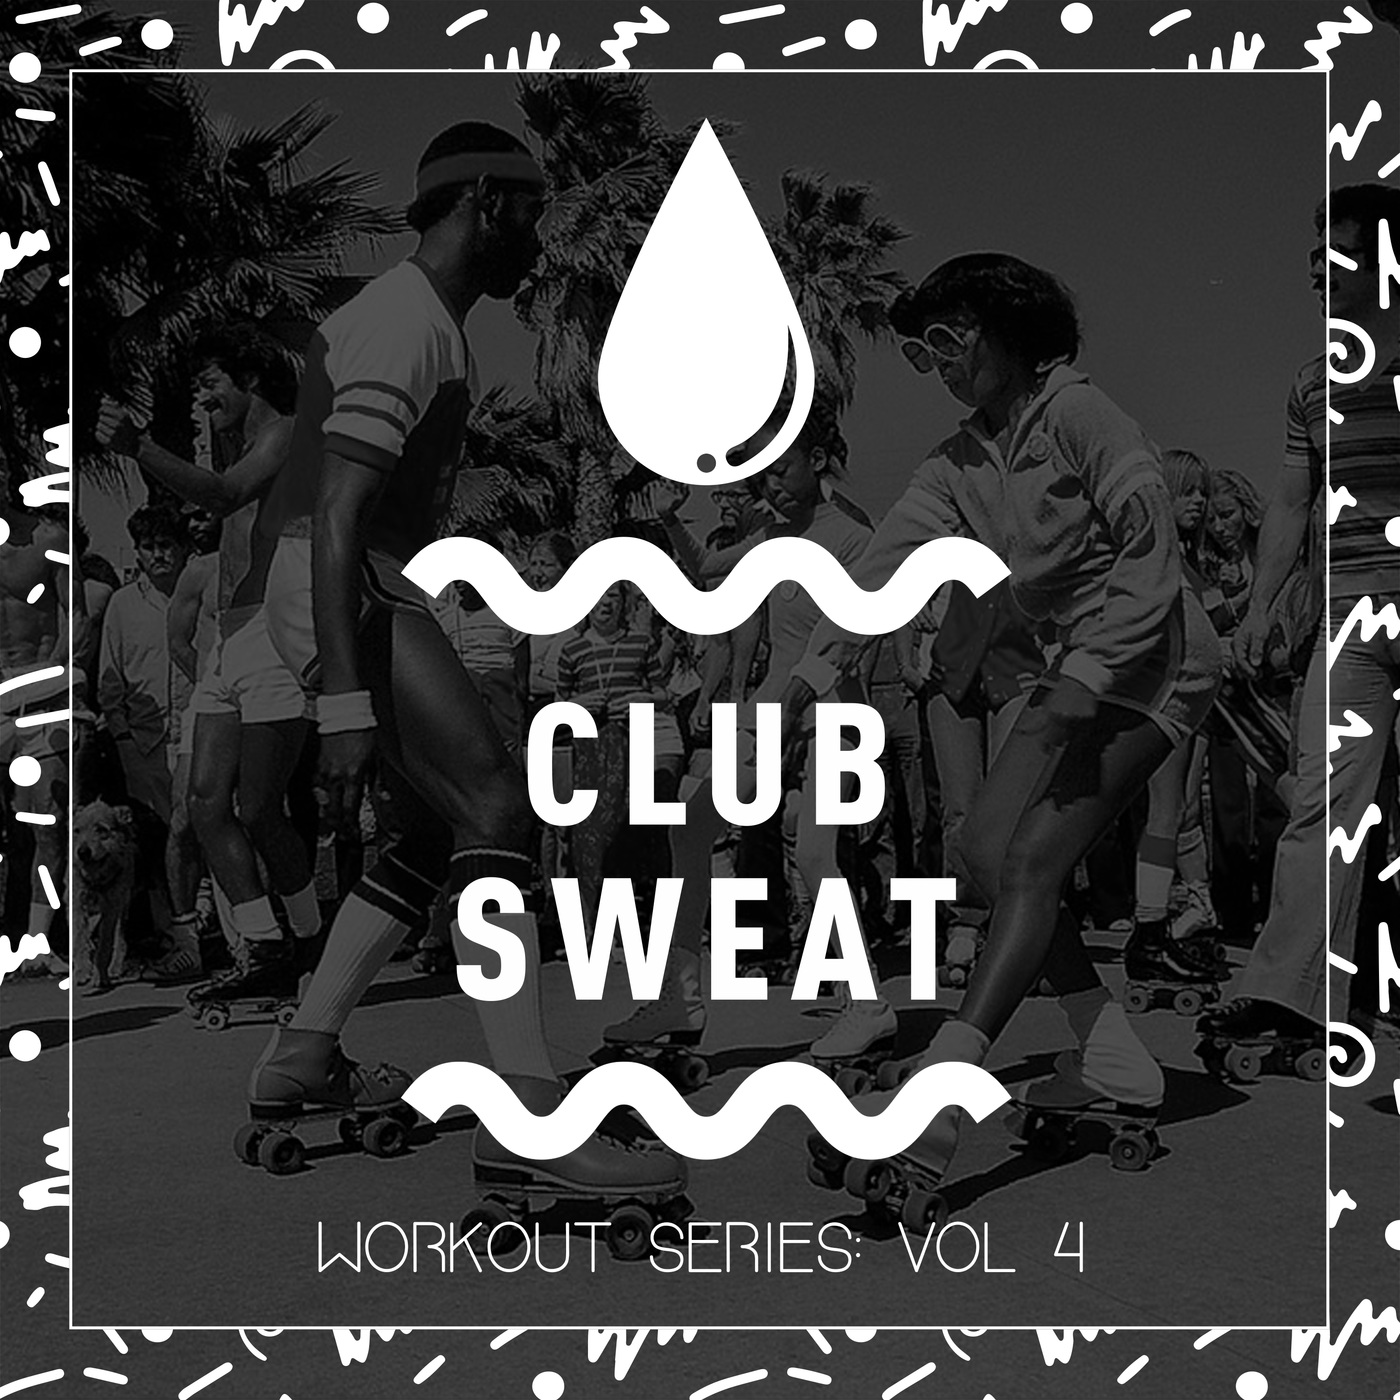 VA - Workout Series, Vol. 4 / Club Sweat